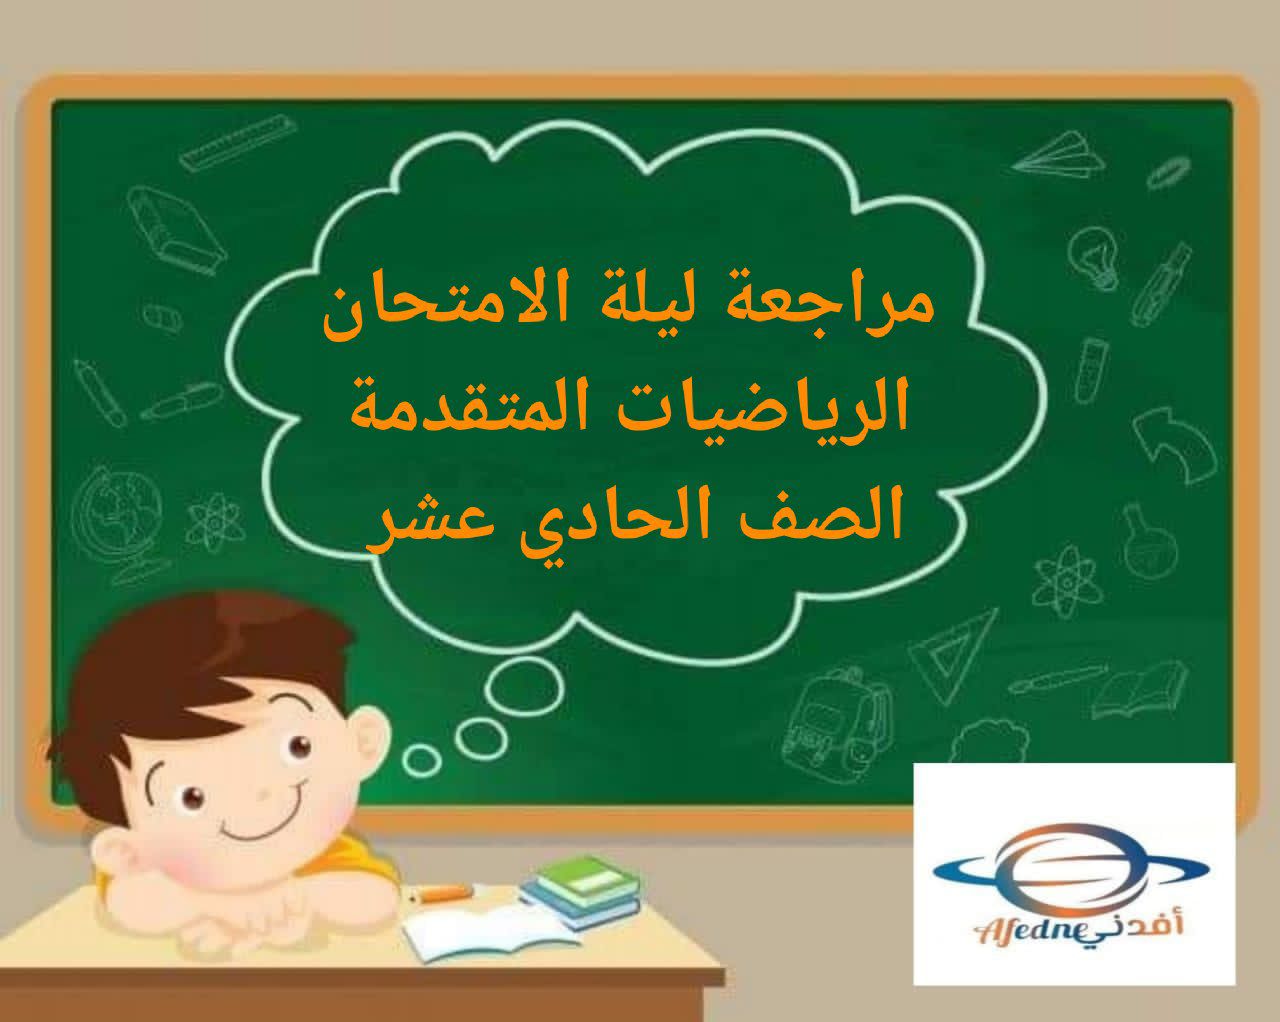 مراجعة ليلة الامتحان في الرياضيات المتقدمة للحادي عشر فصل أول عمان